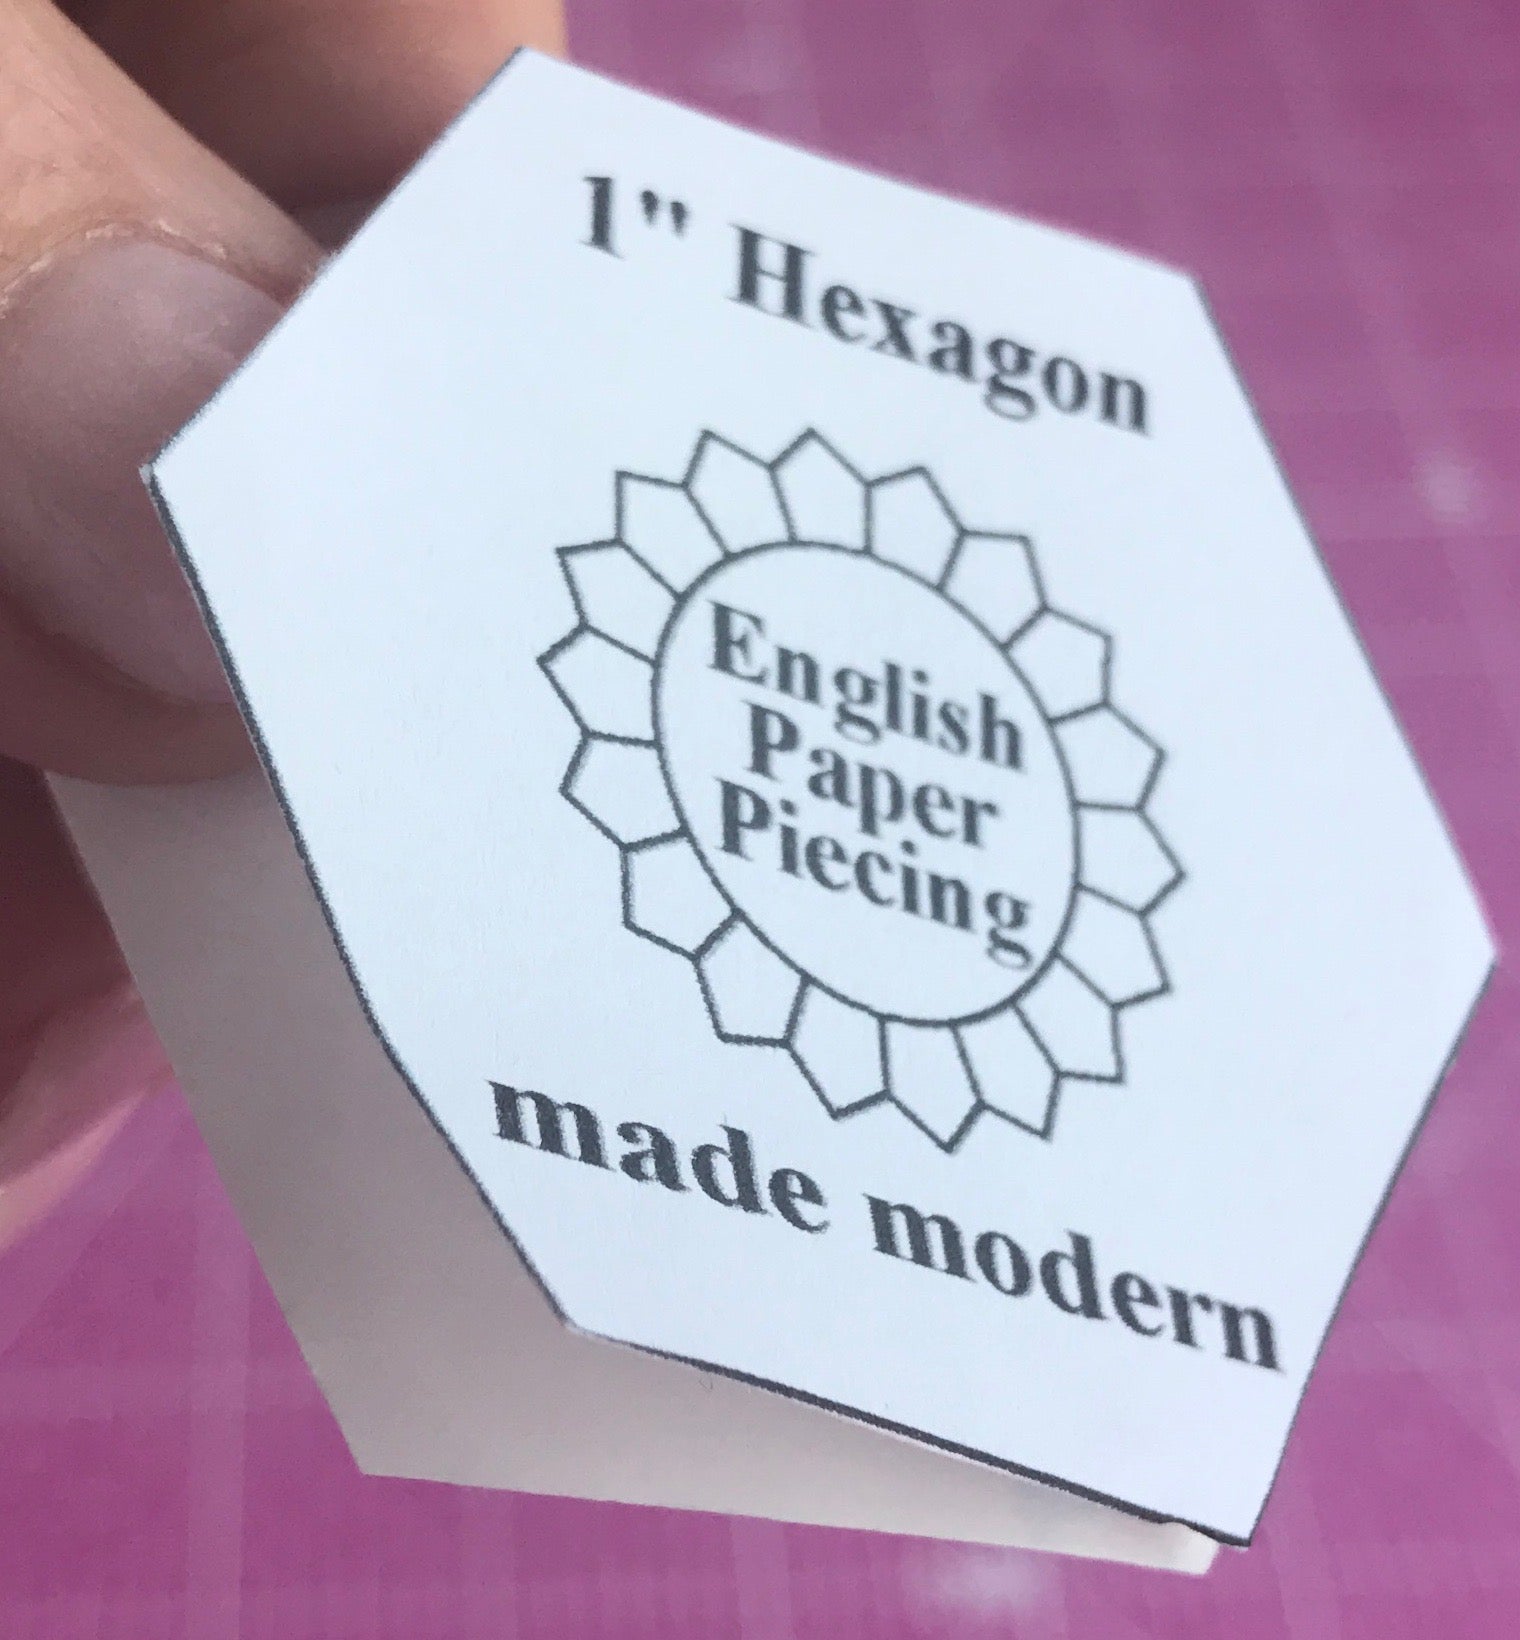 Peel paper backing English Paper PIecing Made Modern